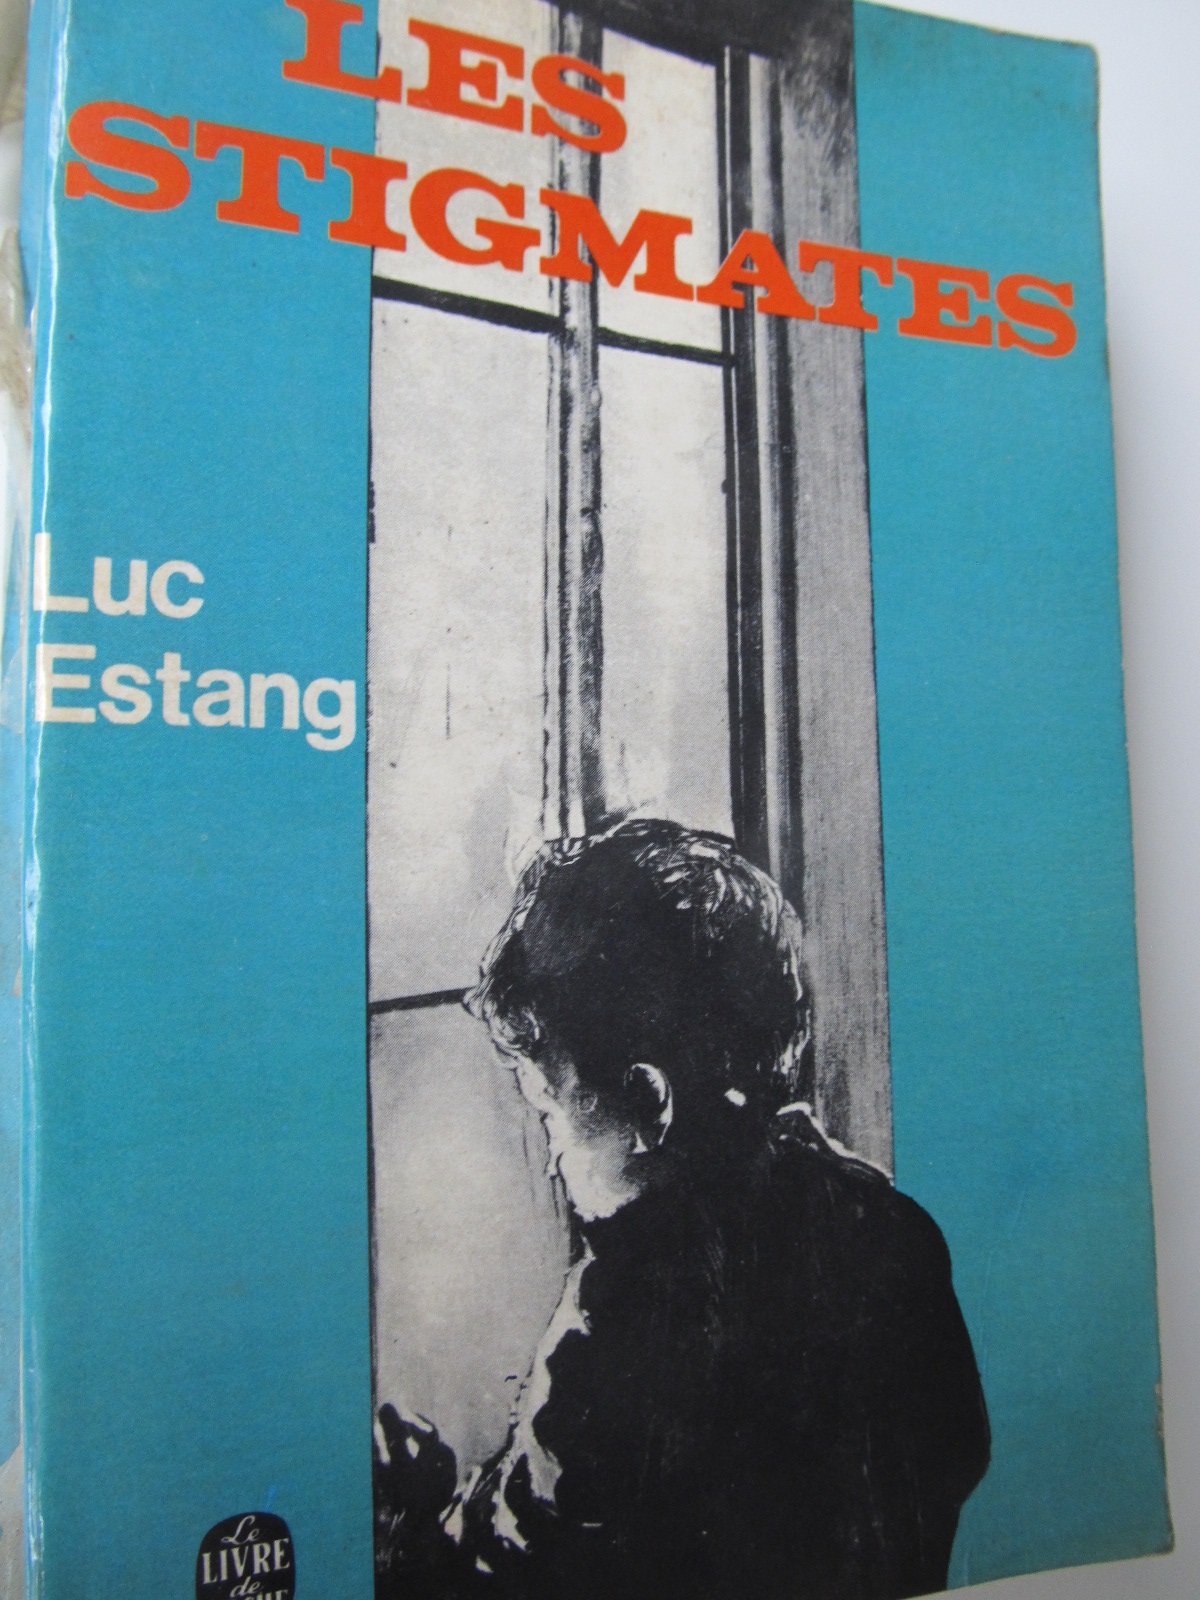 Les stgmates (Le Livre de poche) - lb. franceza - Luc Estang | Detalii carte